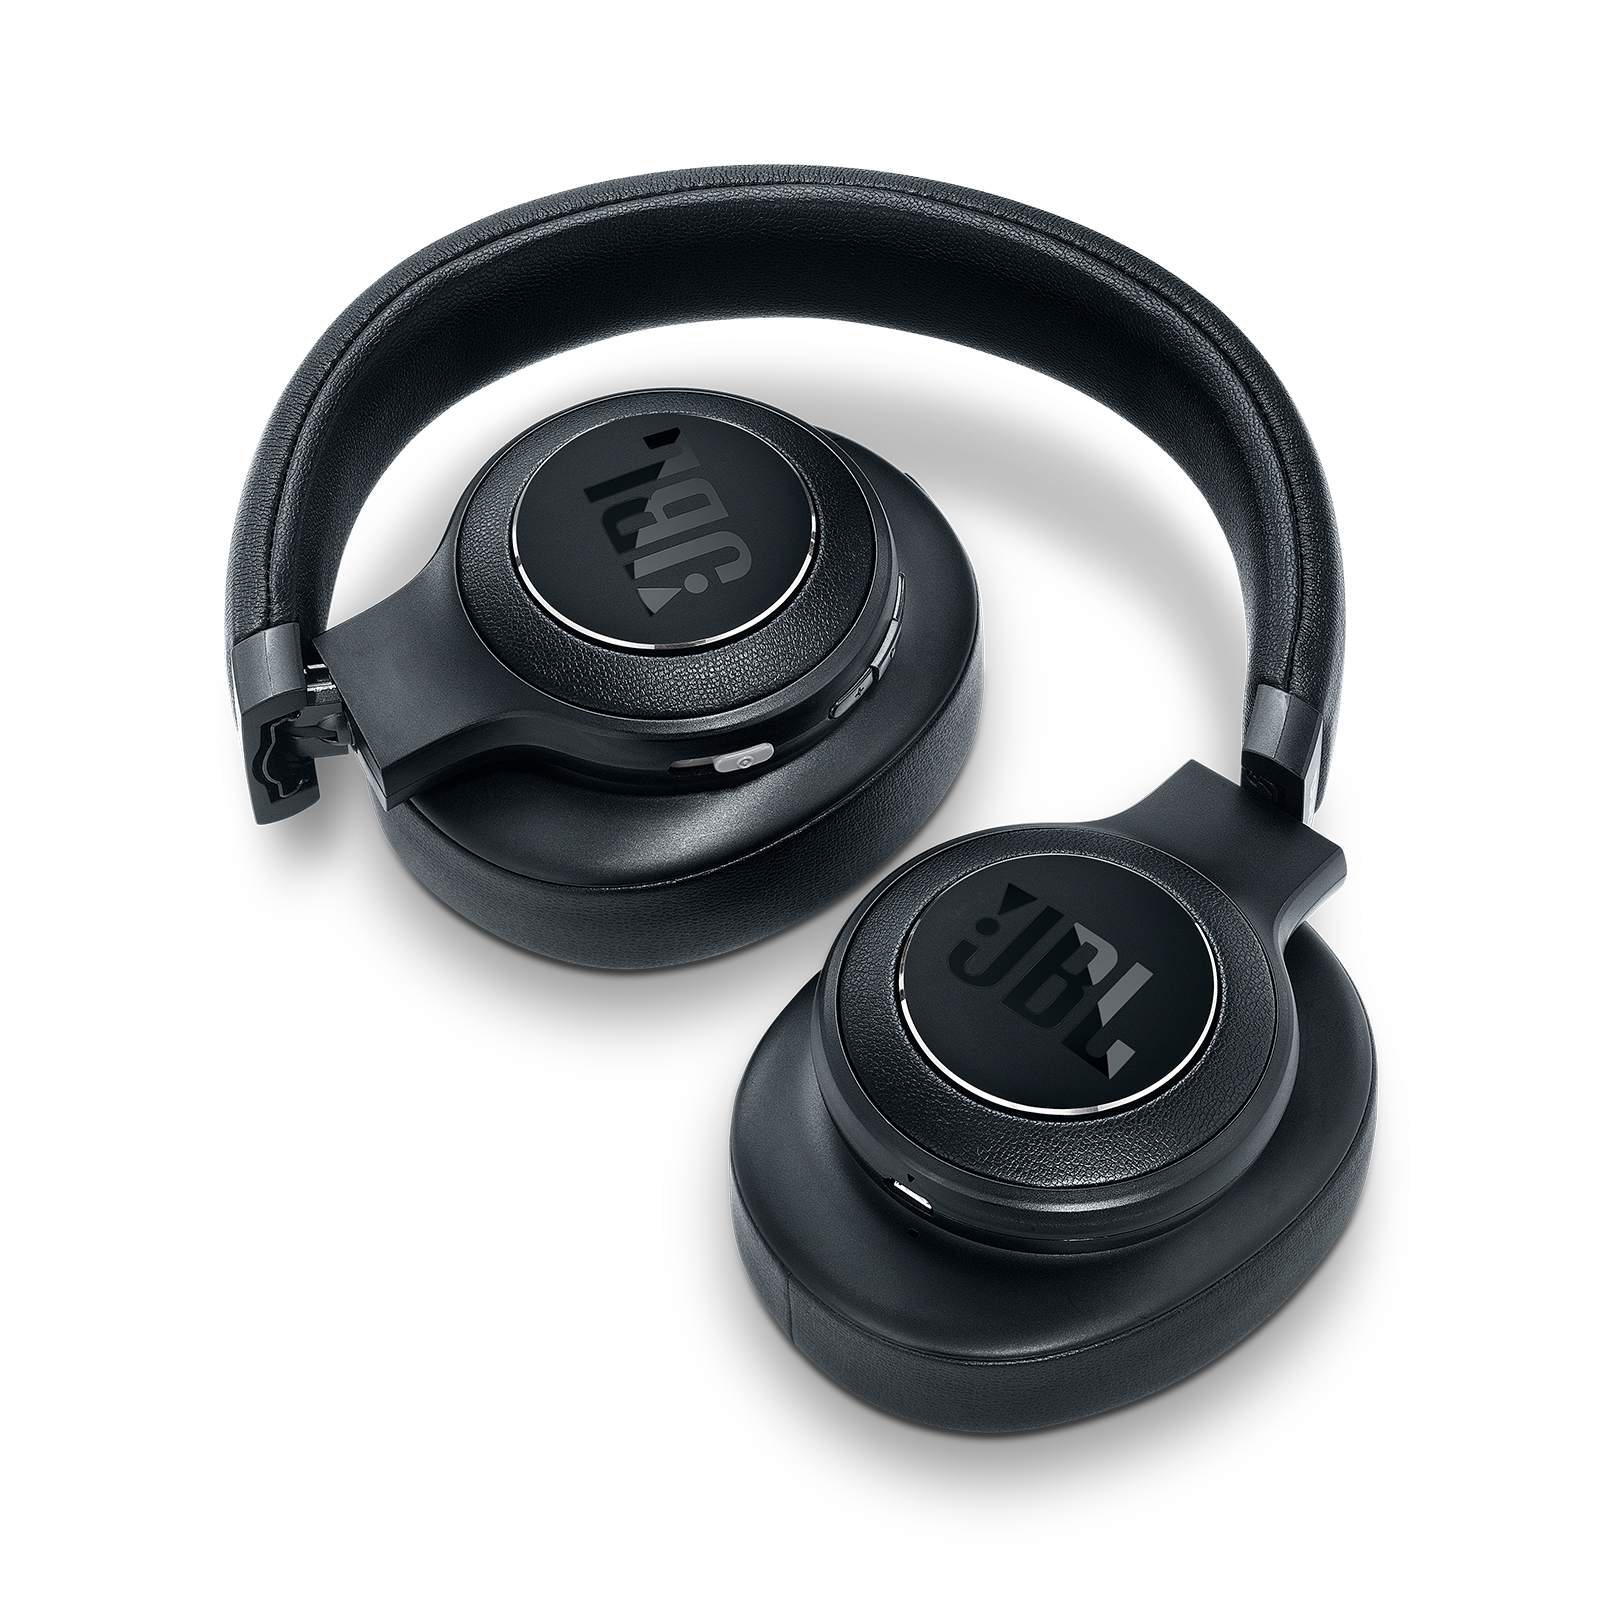 jbl duet nc headphones valued at $349.95 rrp